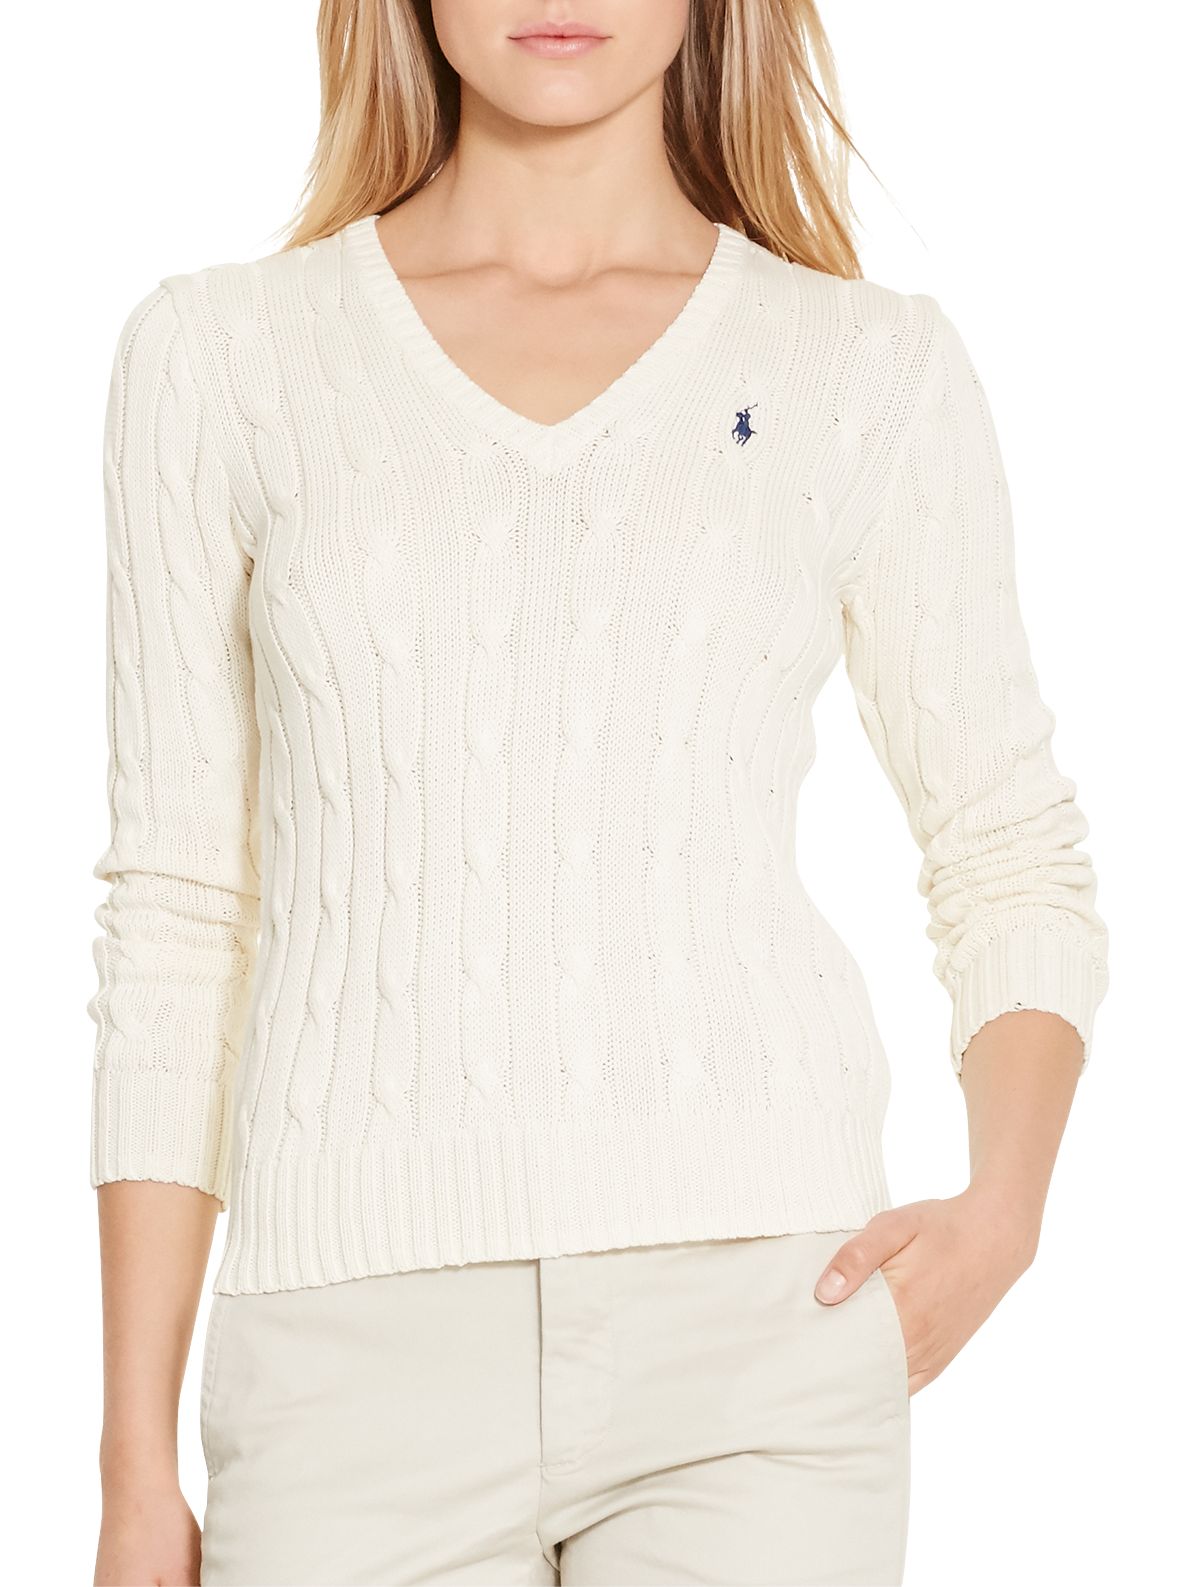 ralph lauren cream sweater